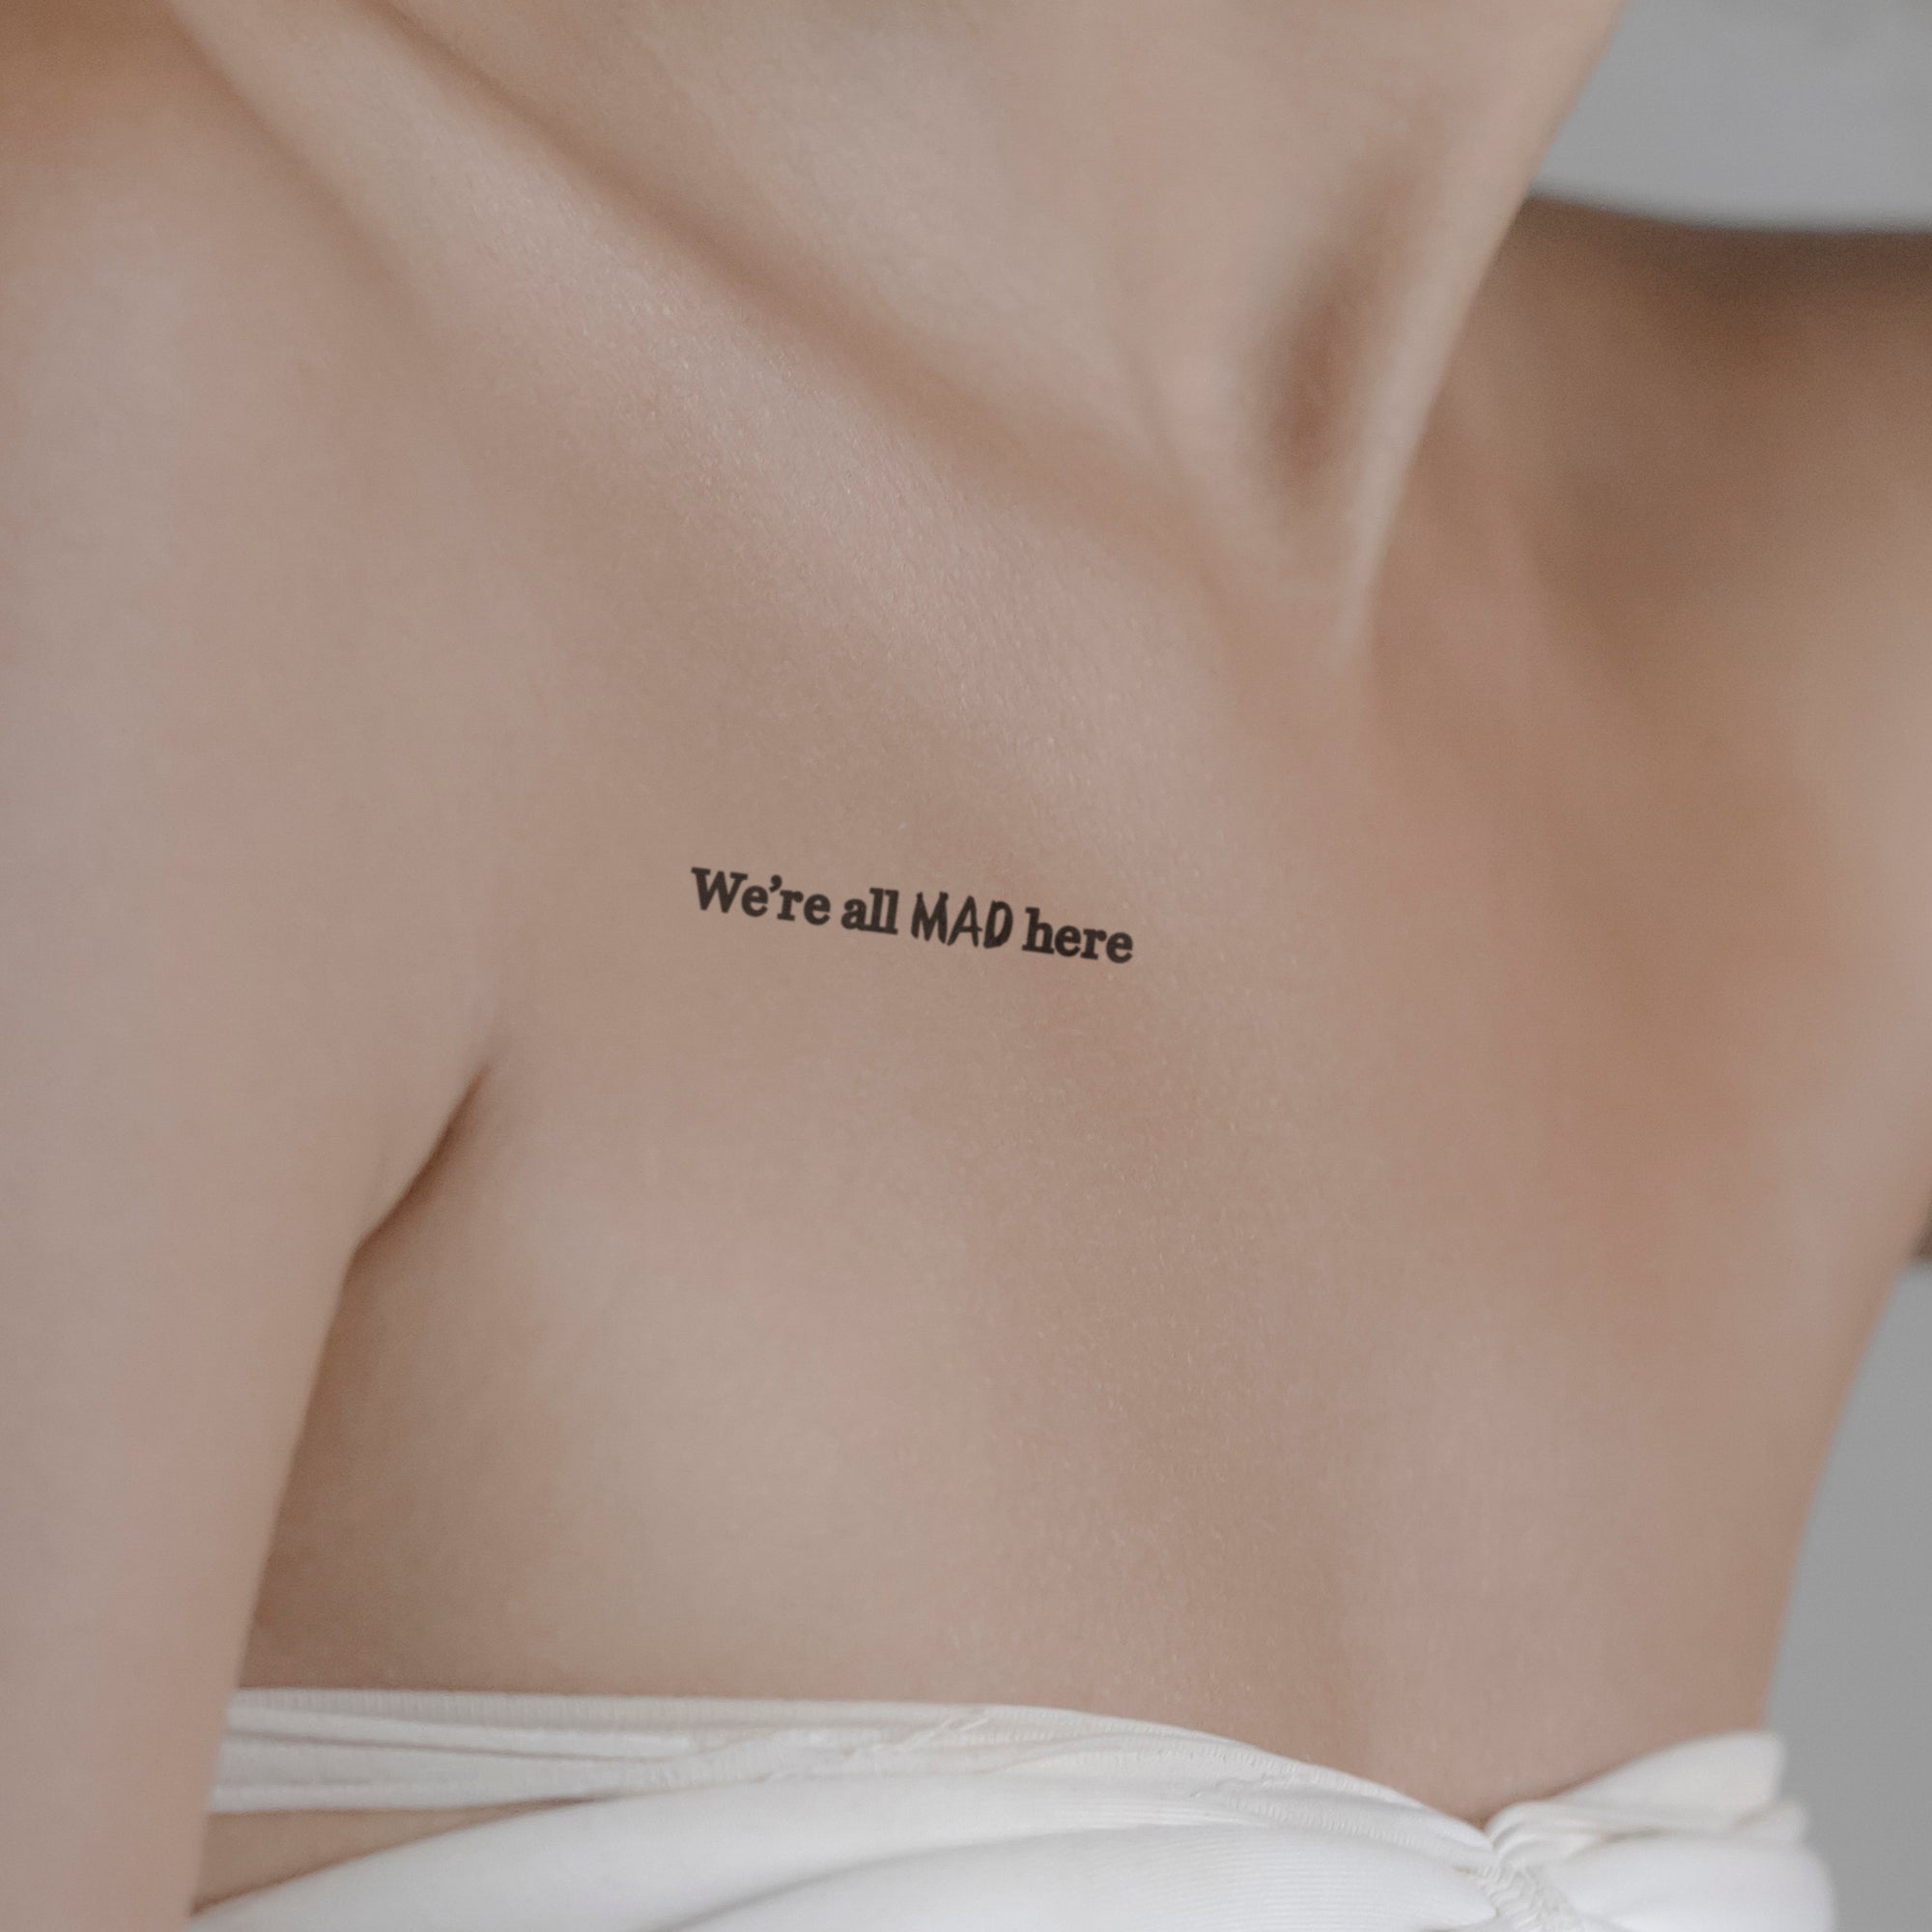 We're all MAD here Tattoo von minink, der Marke für temporäre Tattoos.